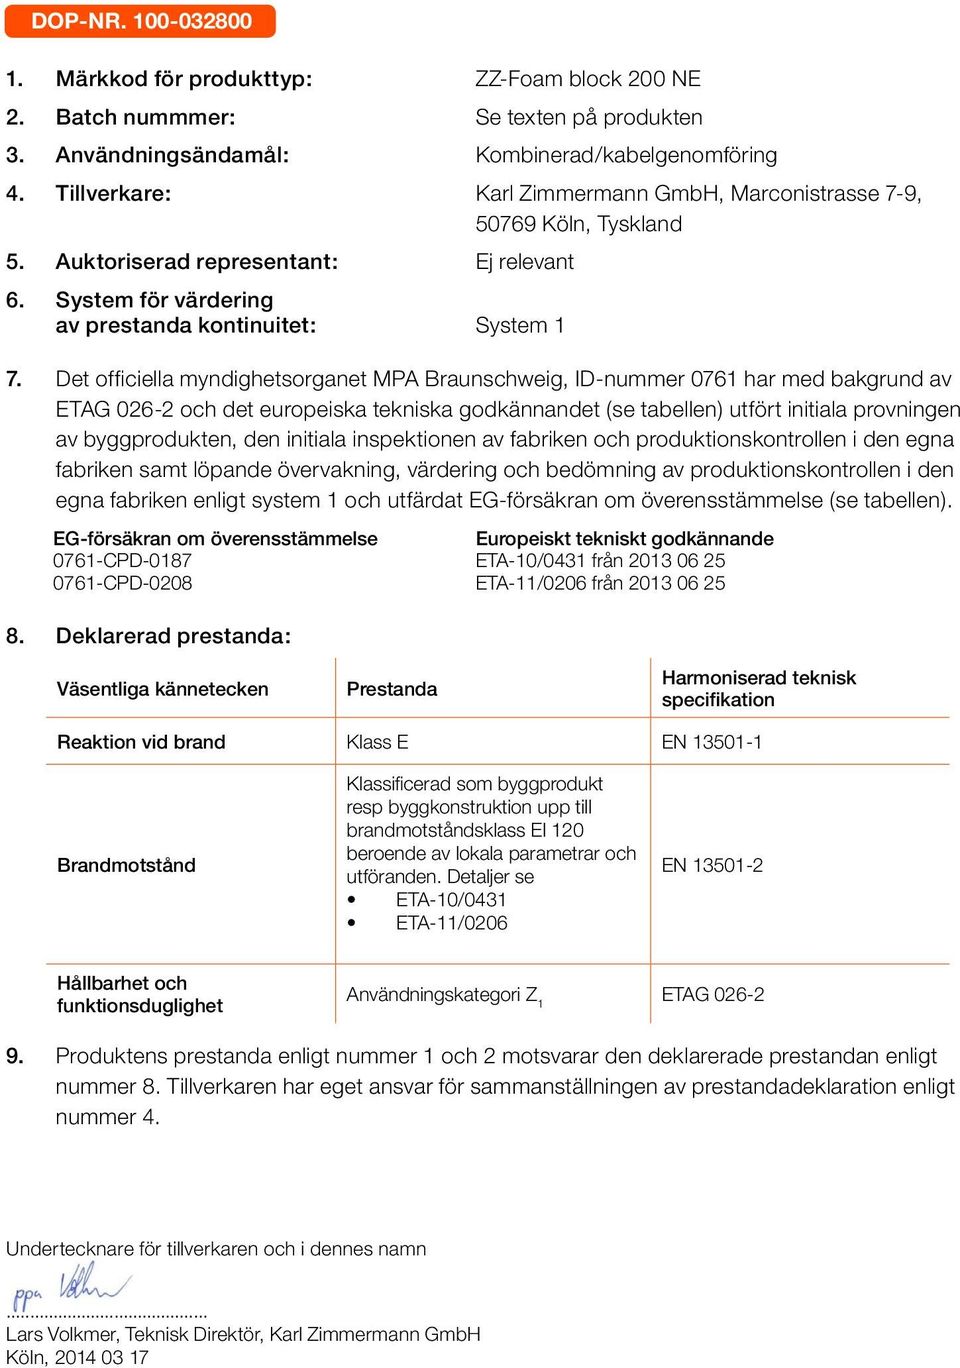 Det officiella myndighetsorganet MPA Braunschweig, ID-nummer 0761 har med bakgrund av och det europeiska tekniska godkännandet (se tabellen) utfört initiala provningen av byggprodukten, den initiala